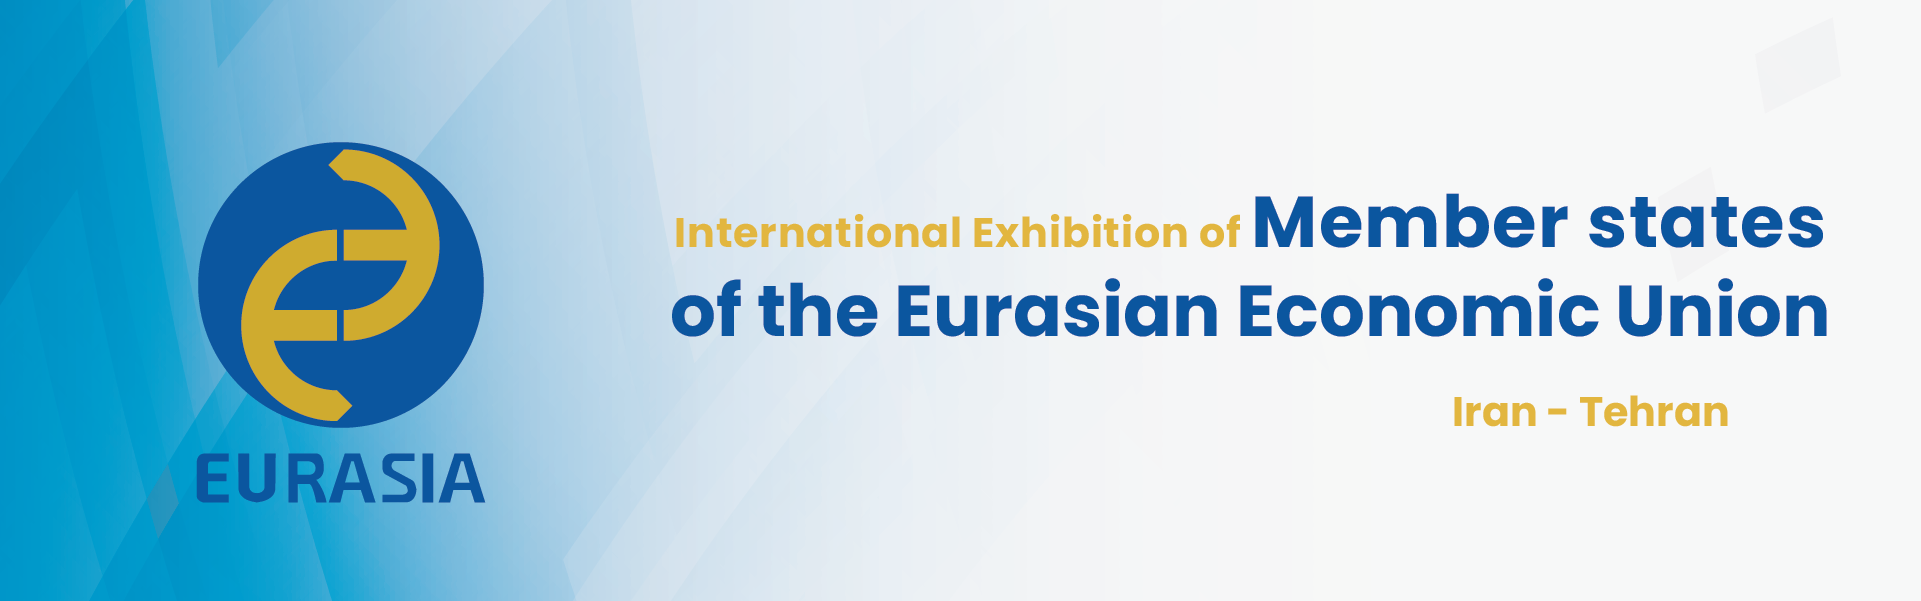 Member states of the Eurasian Economic Union Exhibition Iran